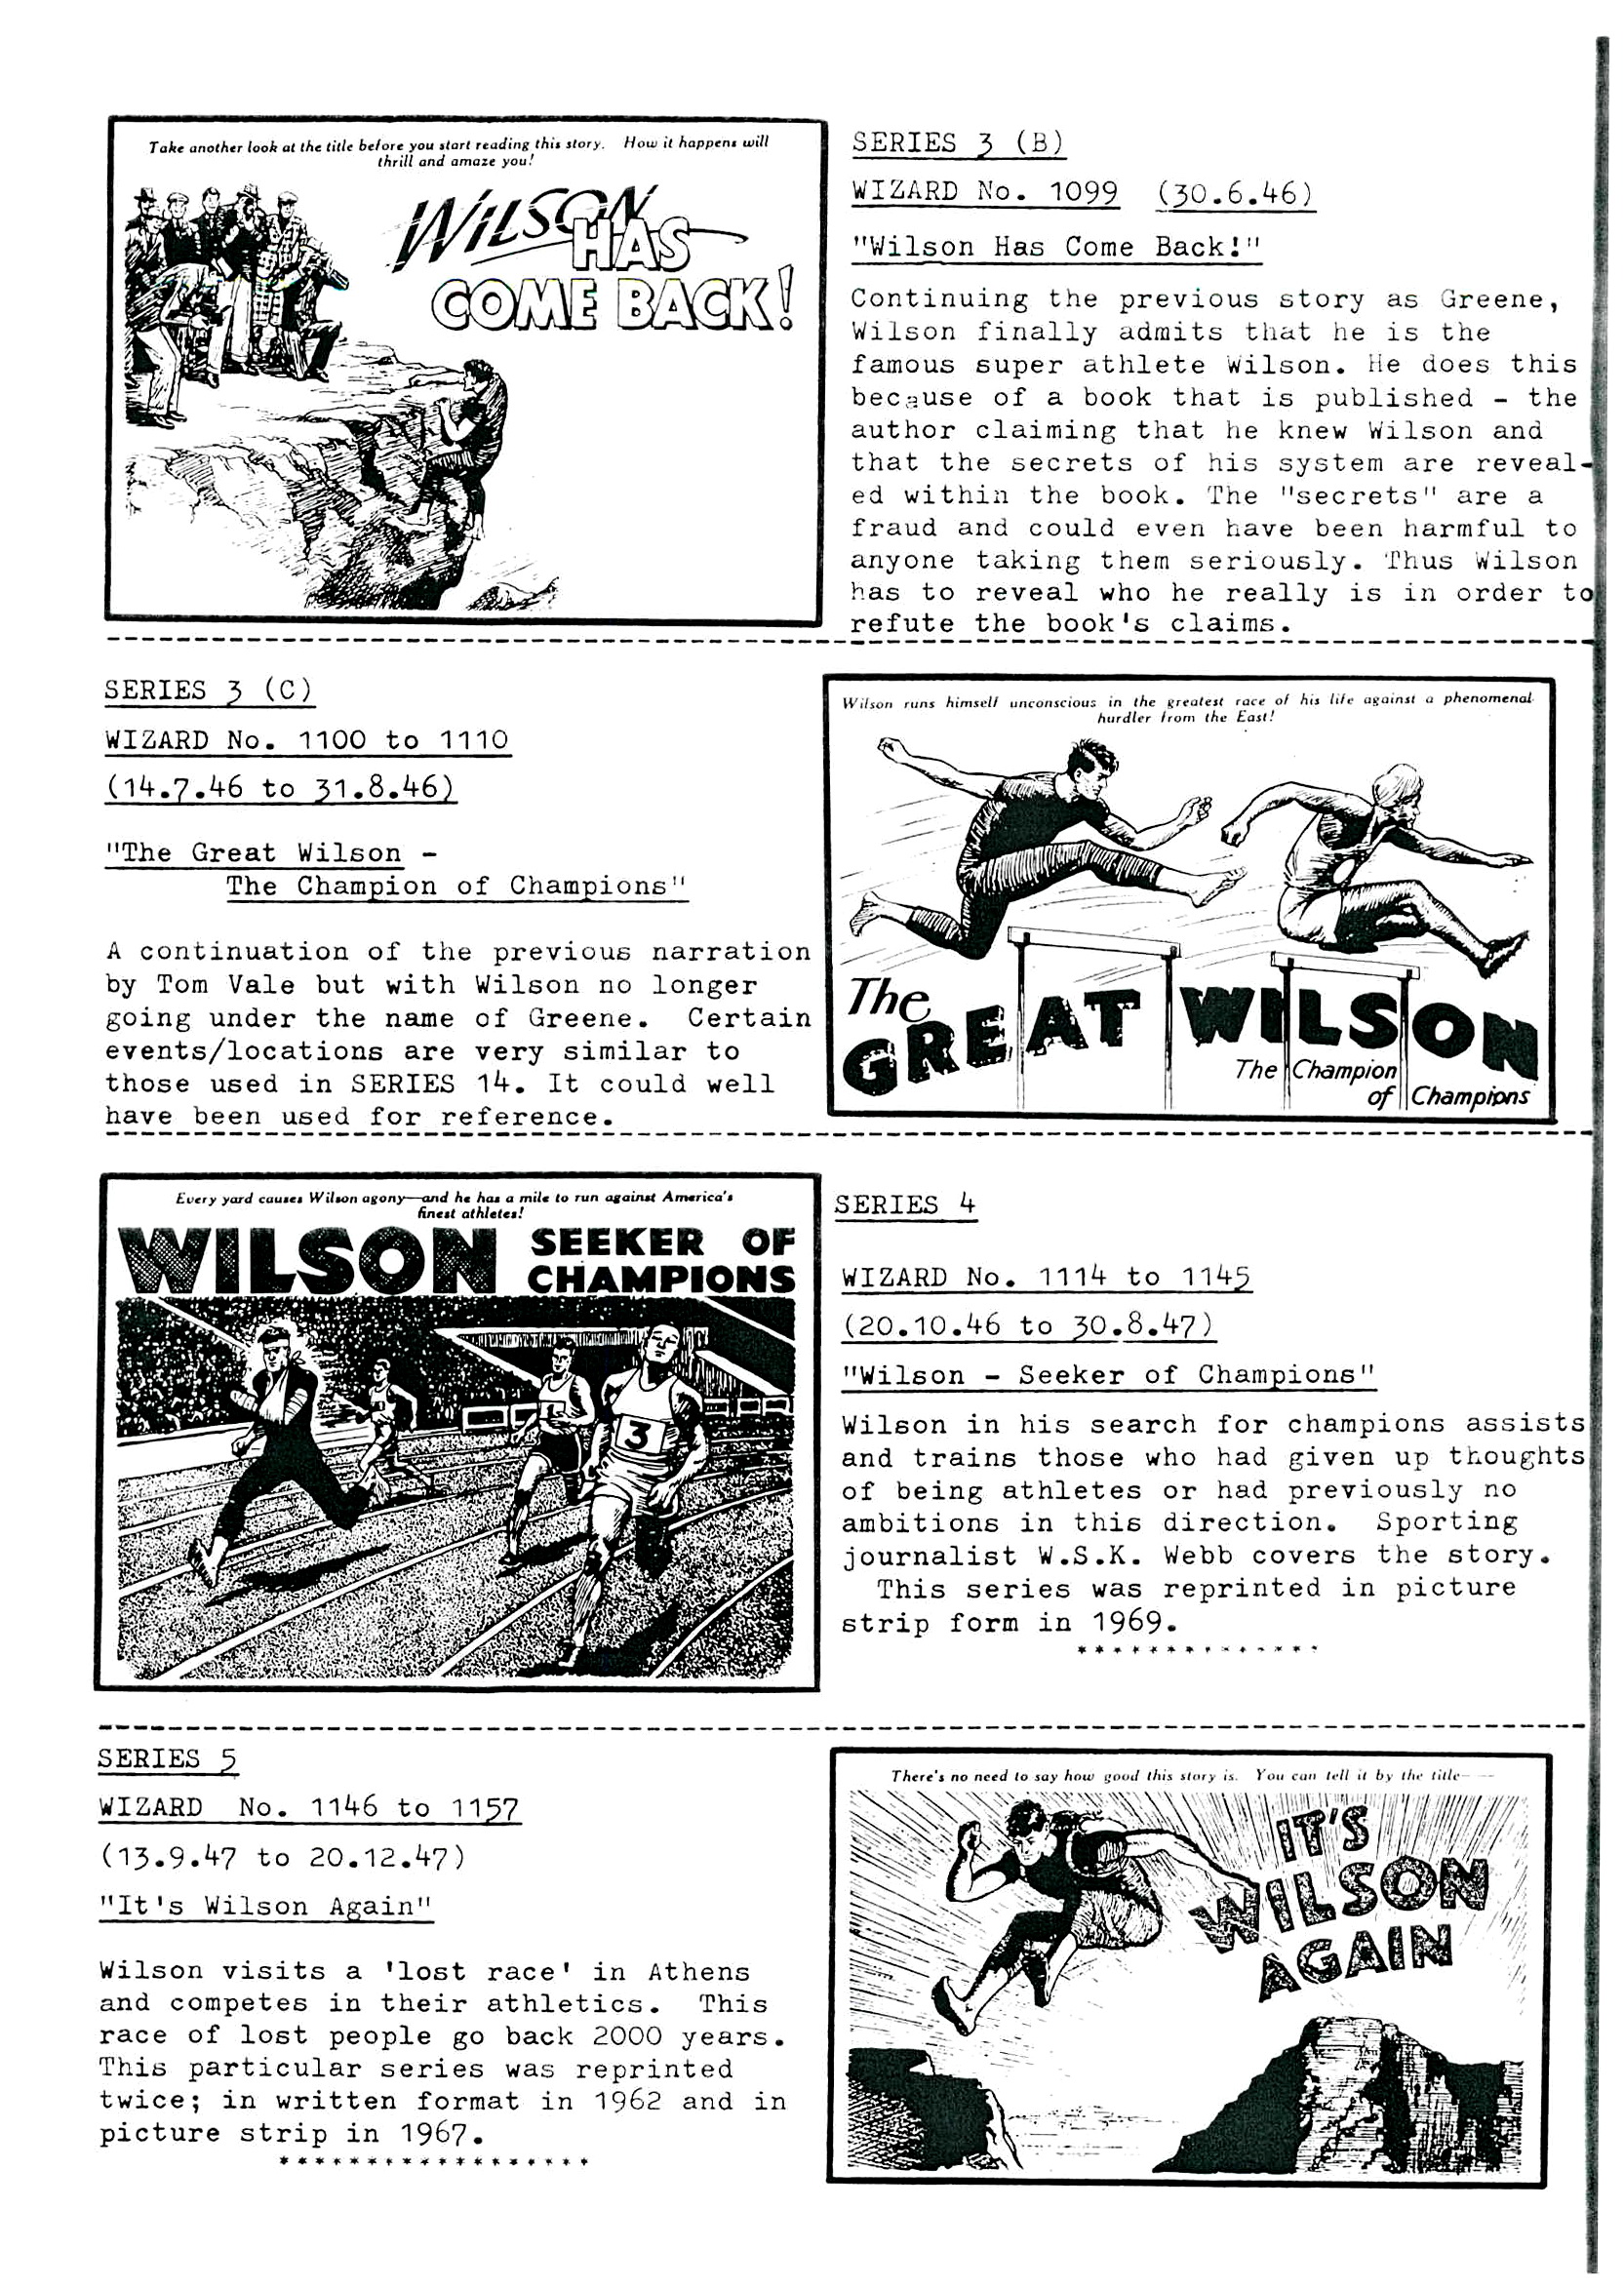 The Amazing Wilson 8